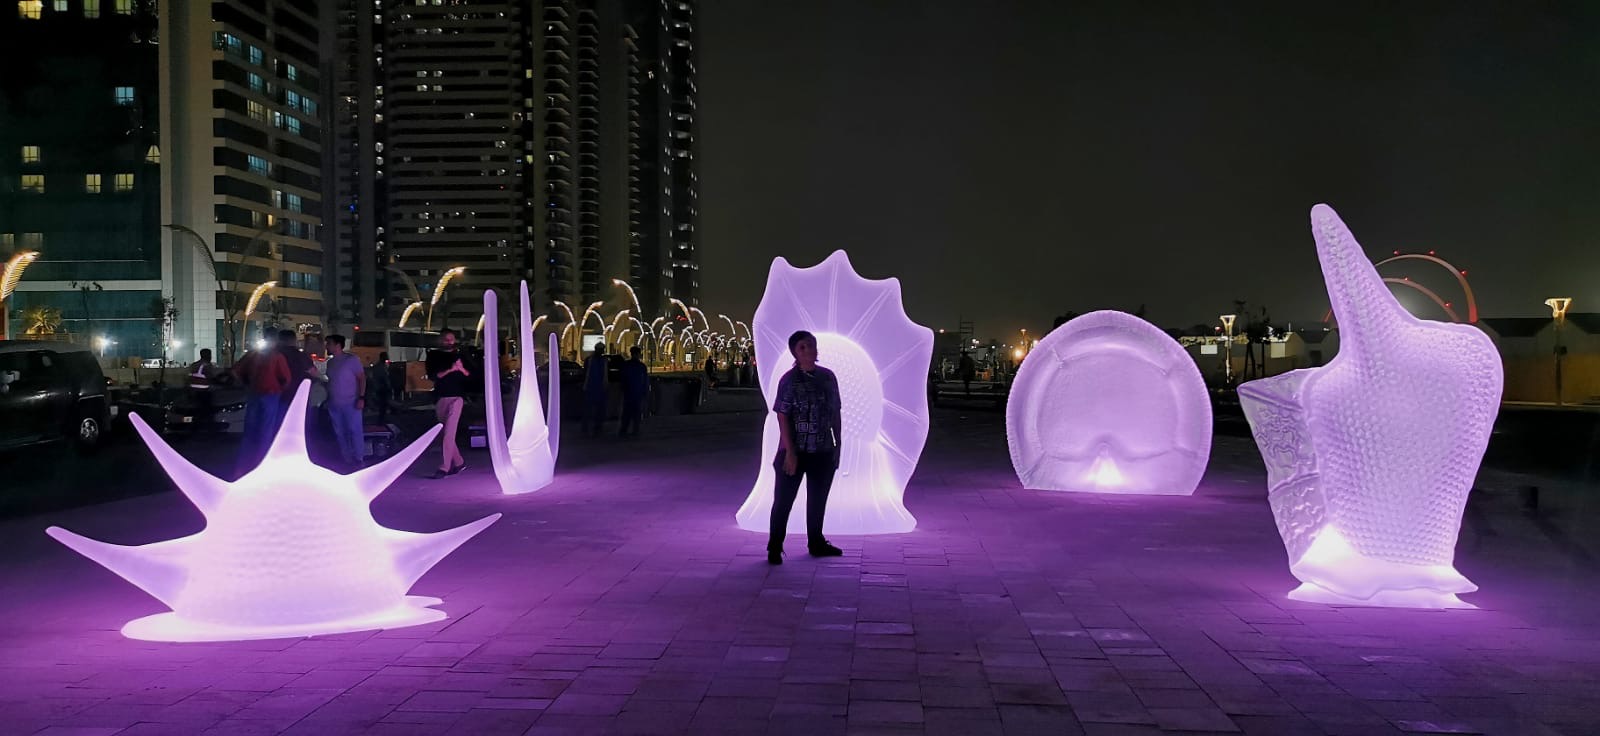 Esculturas iluminadas con luz violeta por la noche con una persona delante. En el fondo pueden verse edificios. Algunas ventanas están iluminadas.